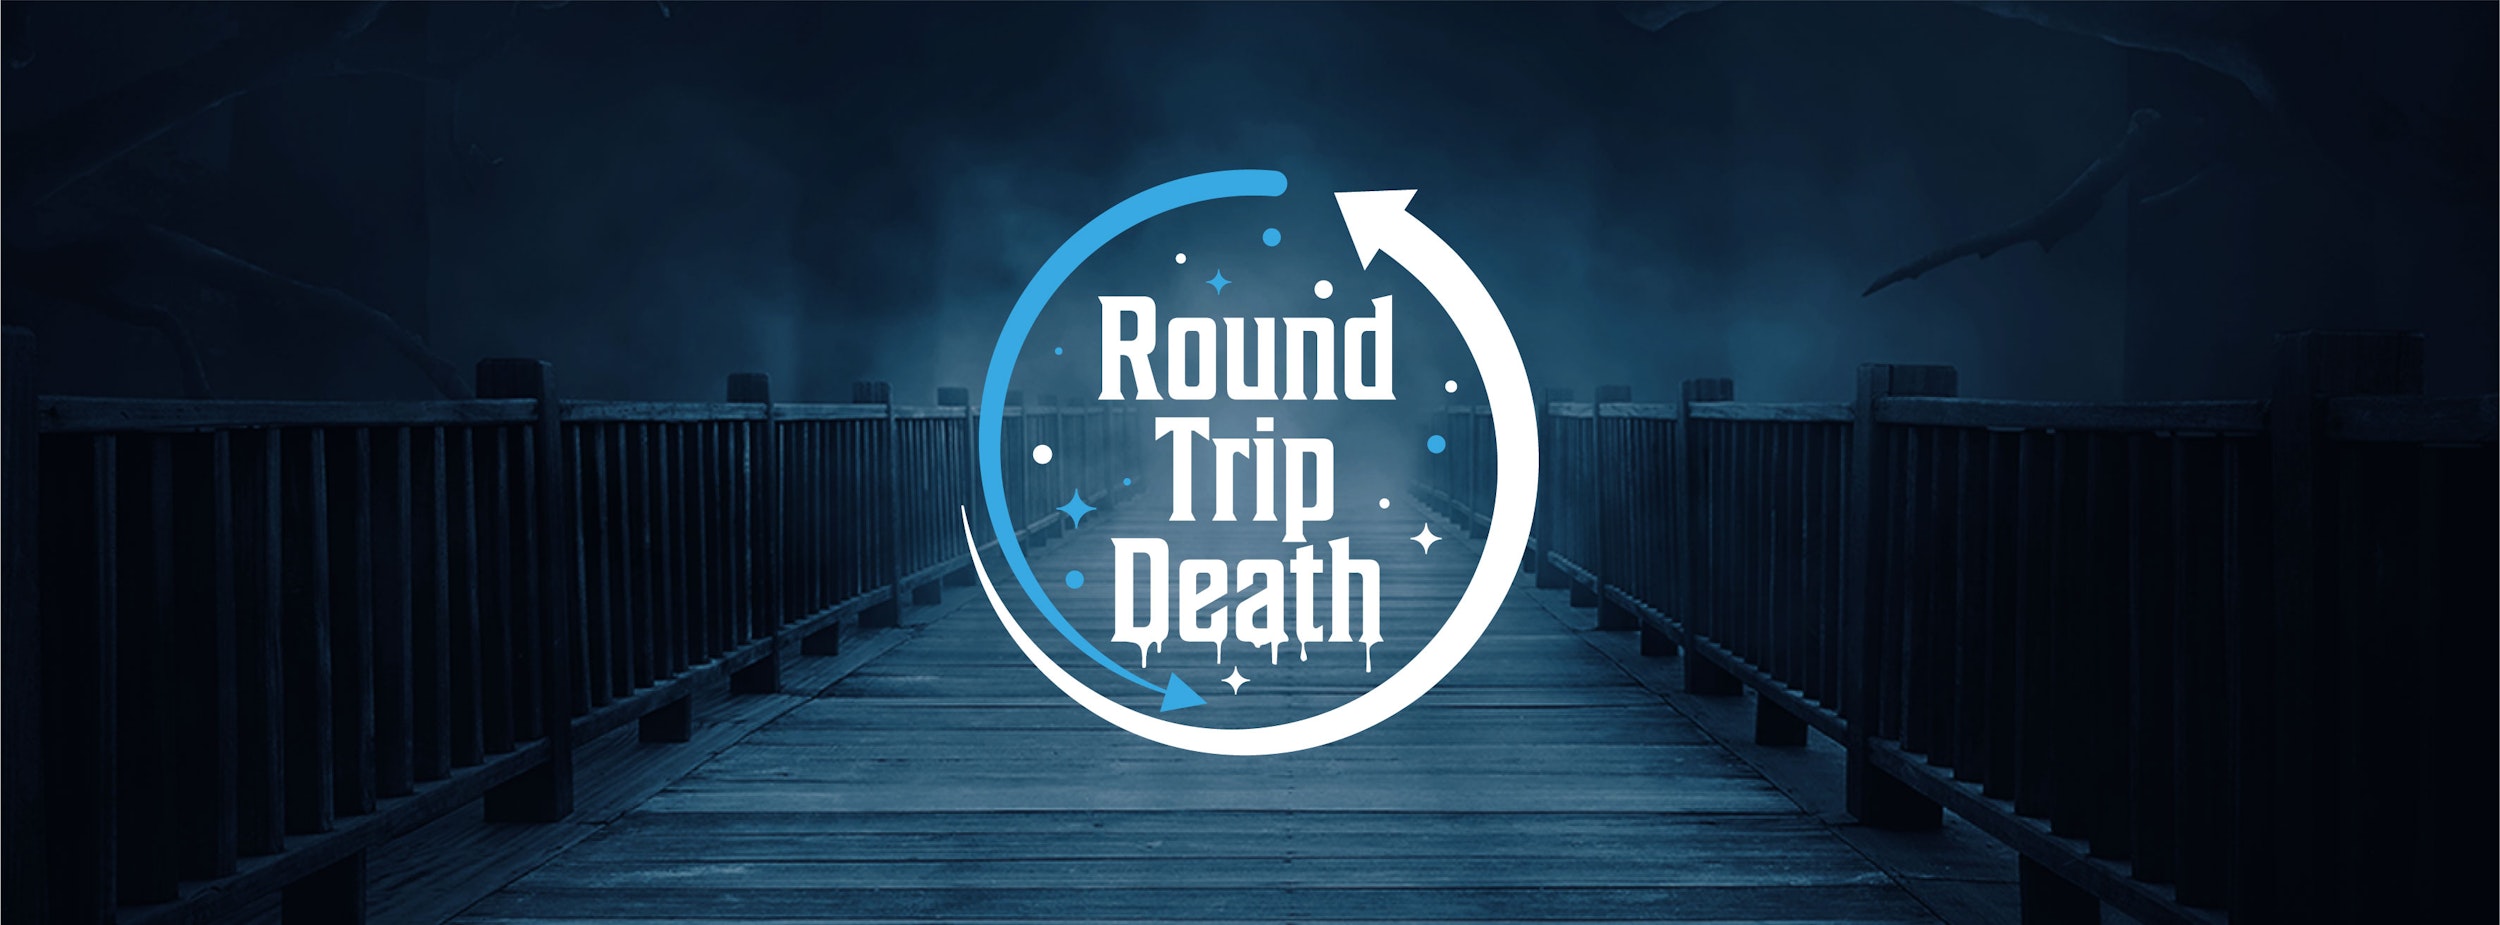 Round Trip Death